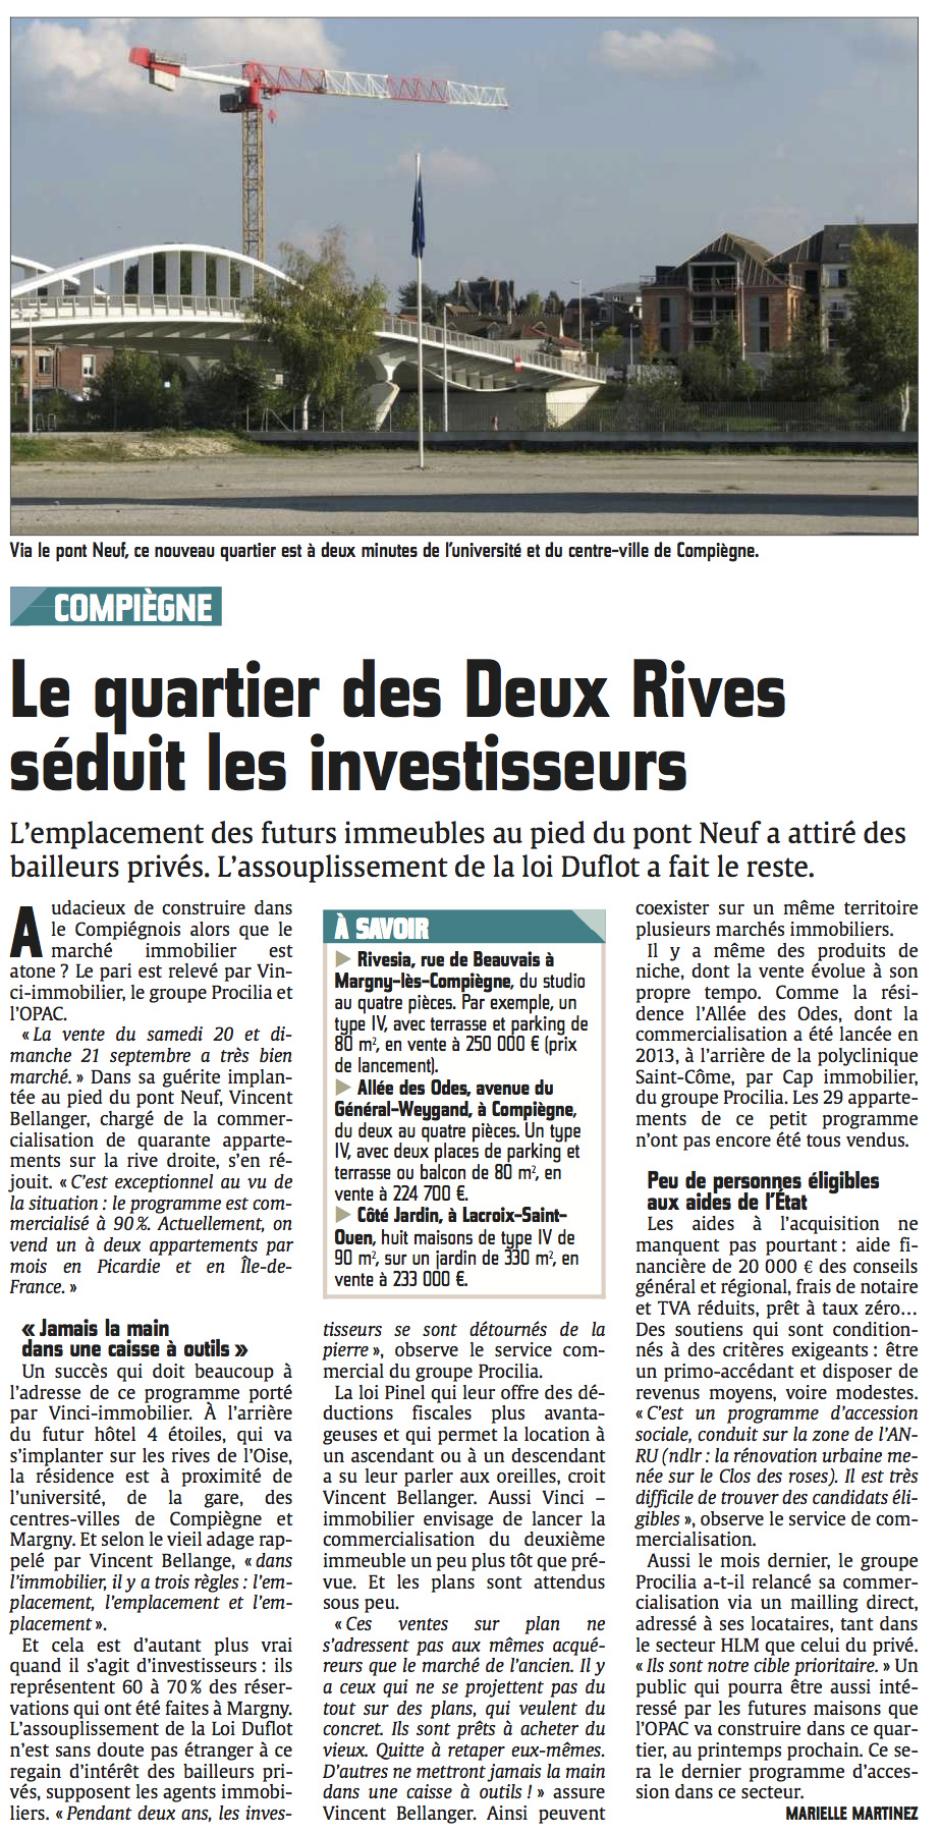 20141006-CP-Compiègne-Le quartier des Deux Rives séduit les investisseurs